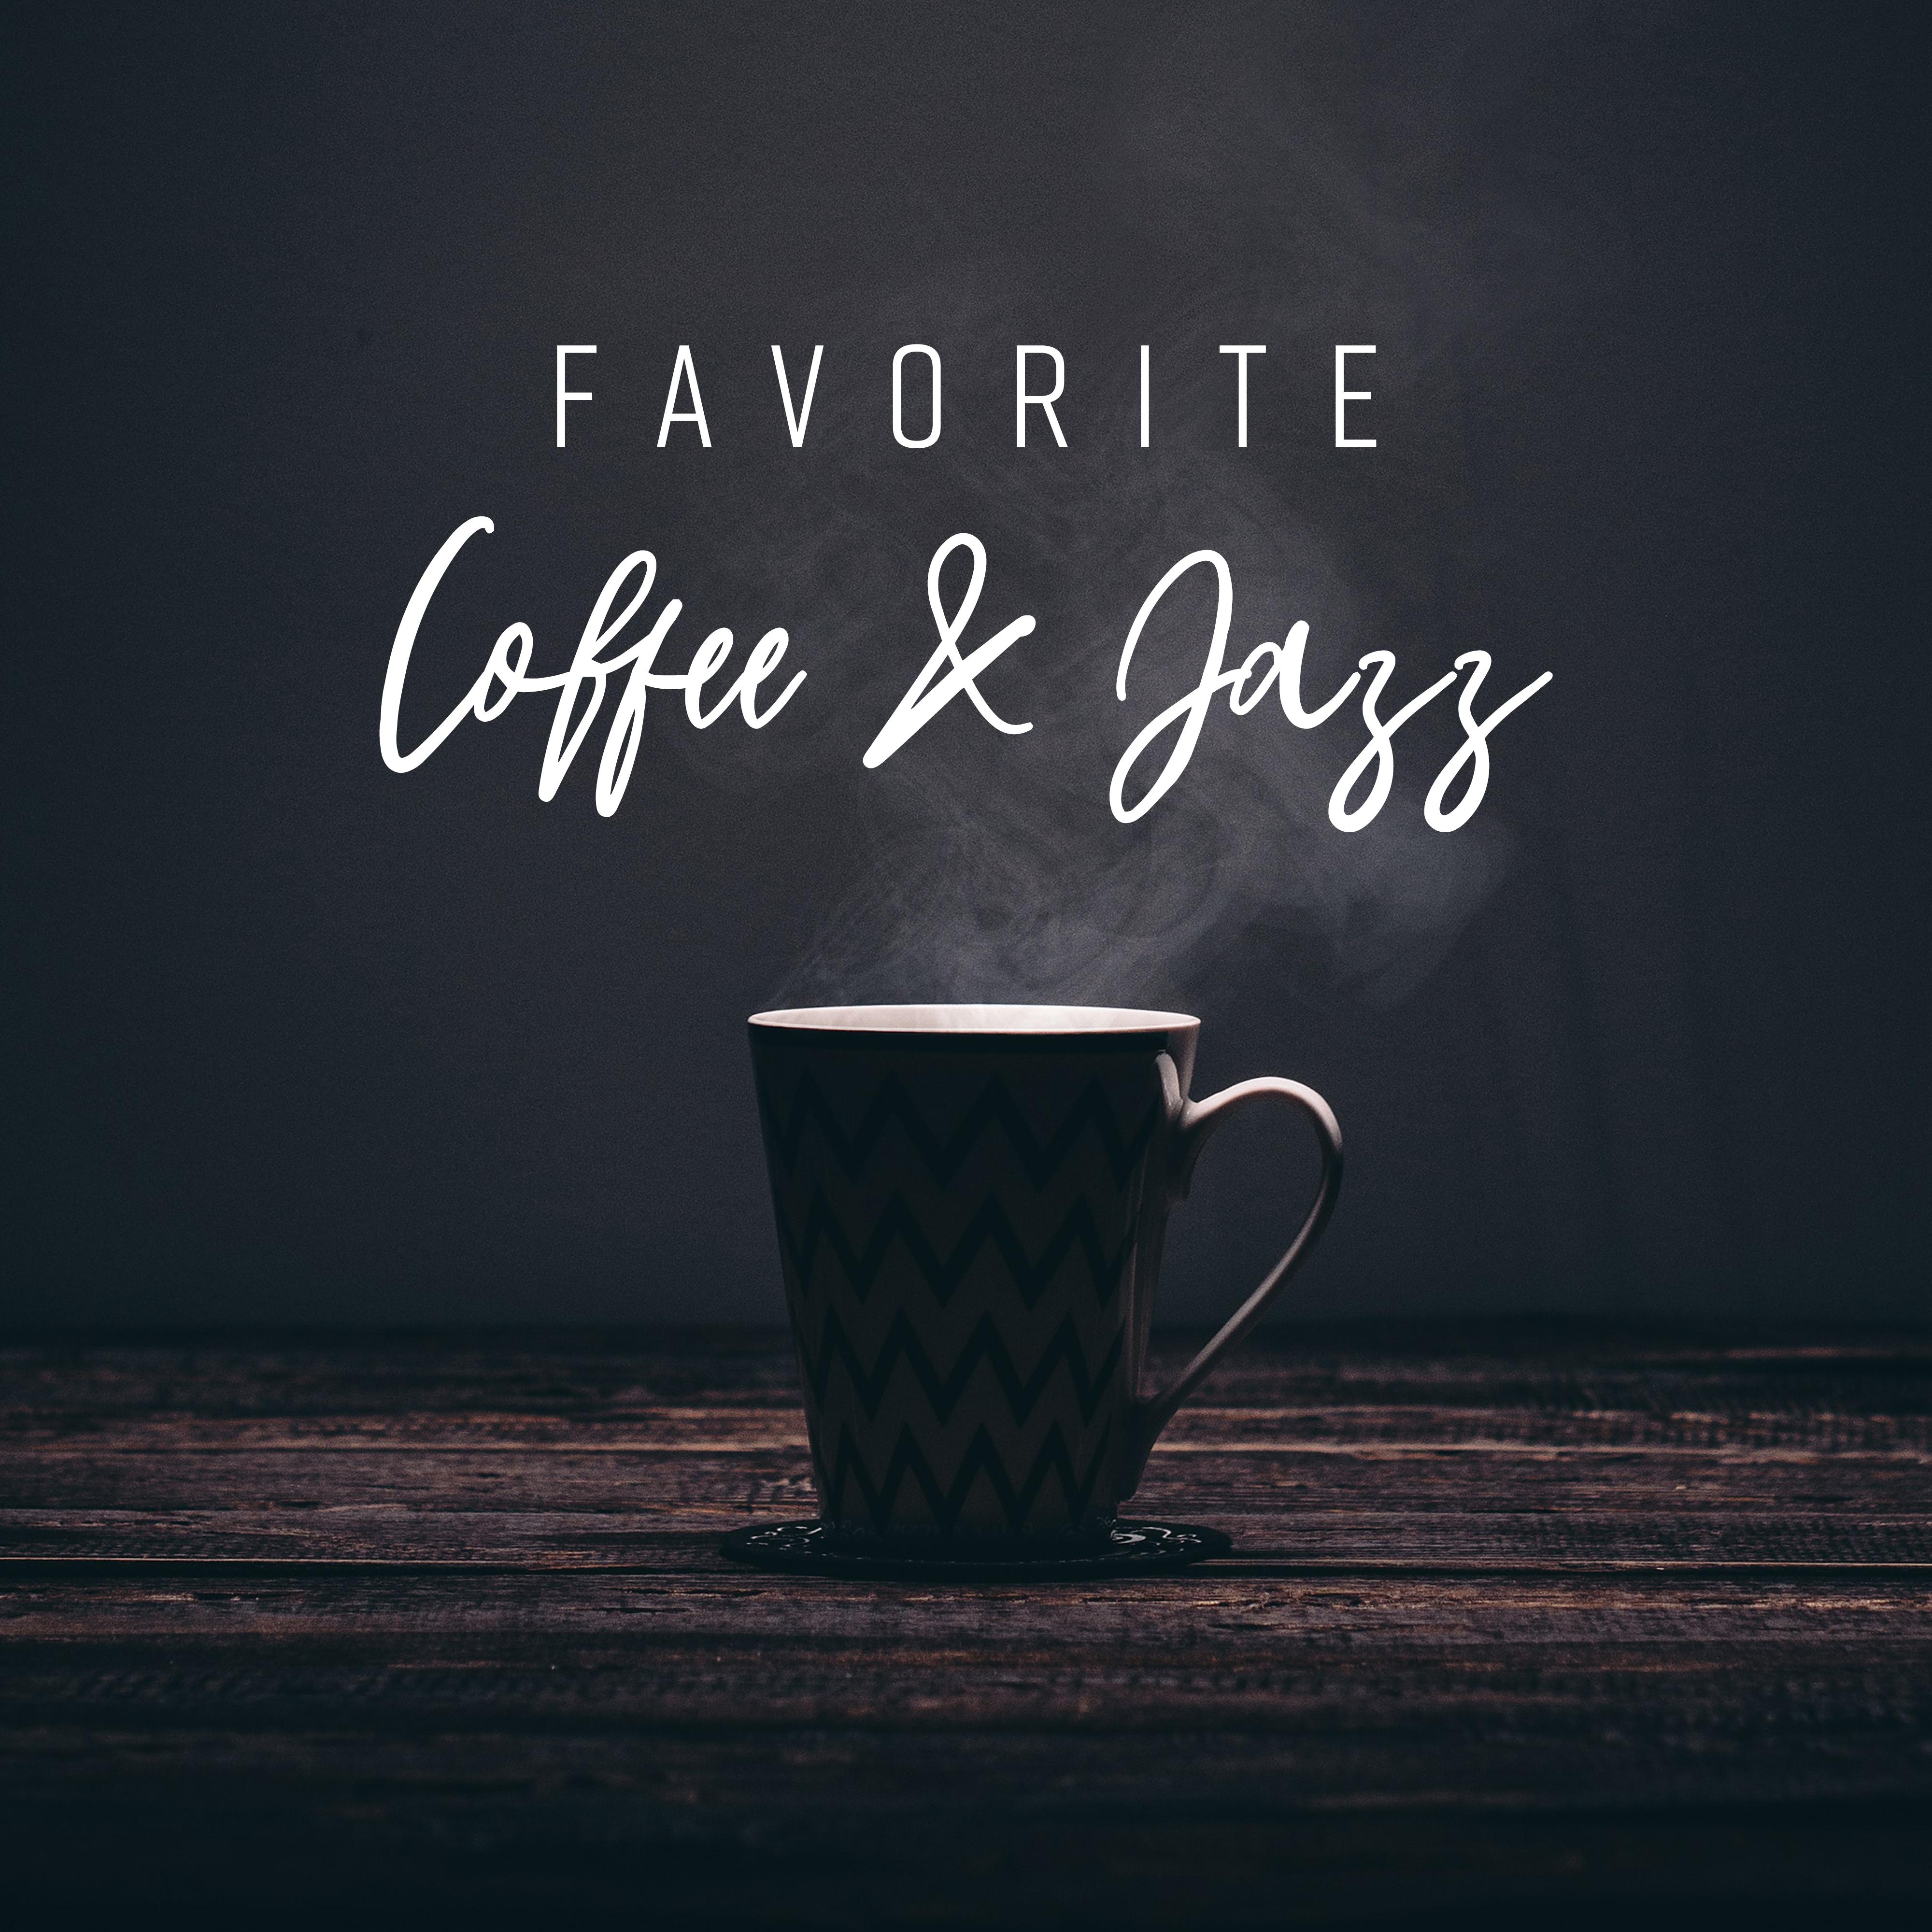 Favorite Coffee & Jazz